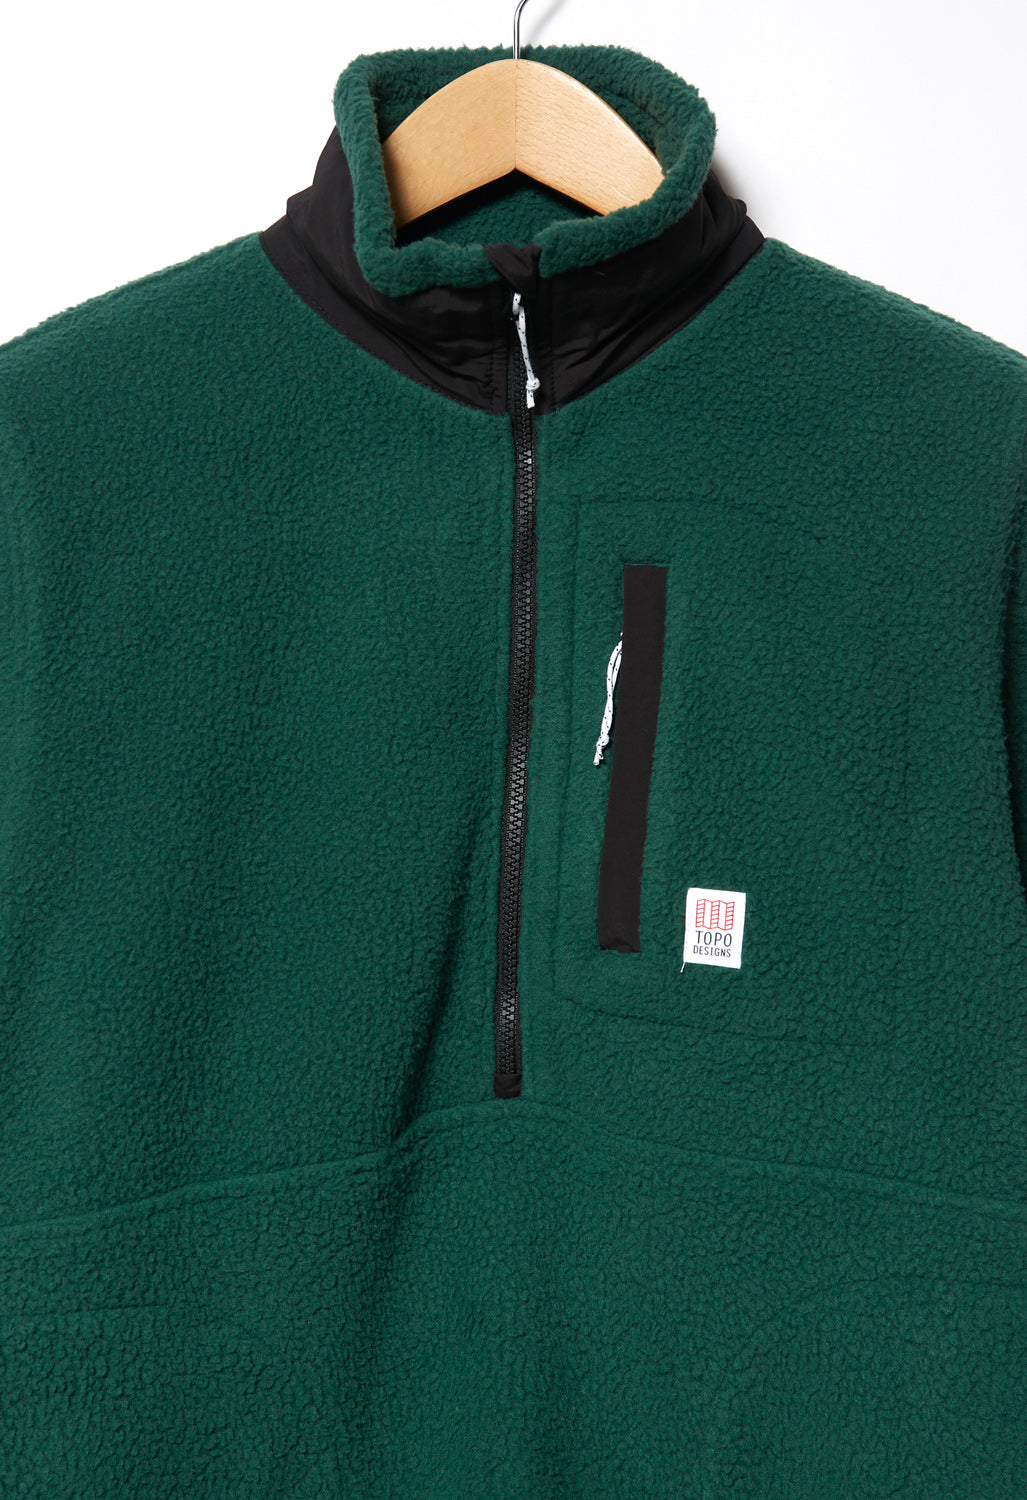 Topo Designs Men's Mountain Fleece Pullover - Forest